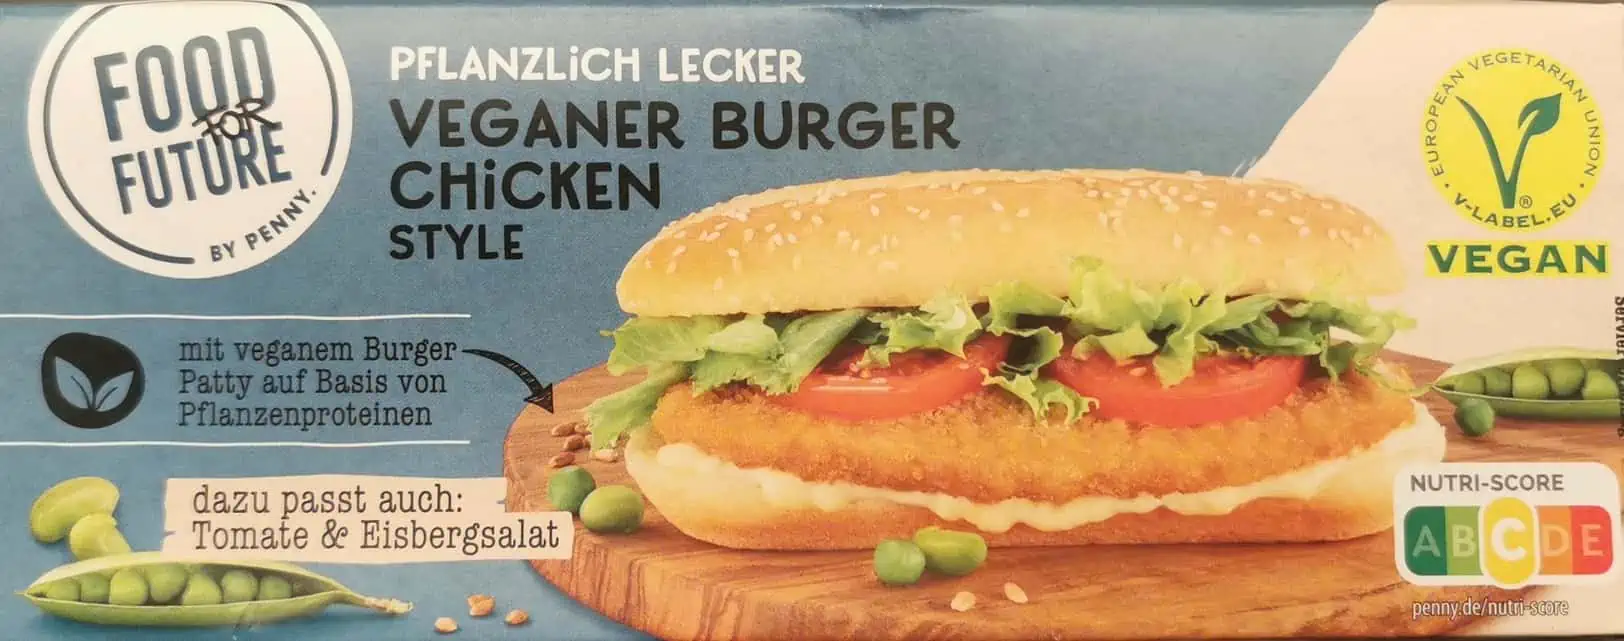 Veganer Burger Chicken Style 09 | Fleischersatz-Produkte.de